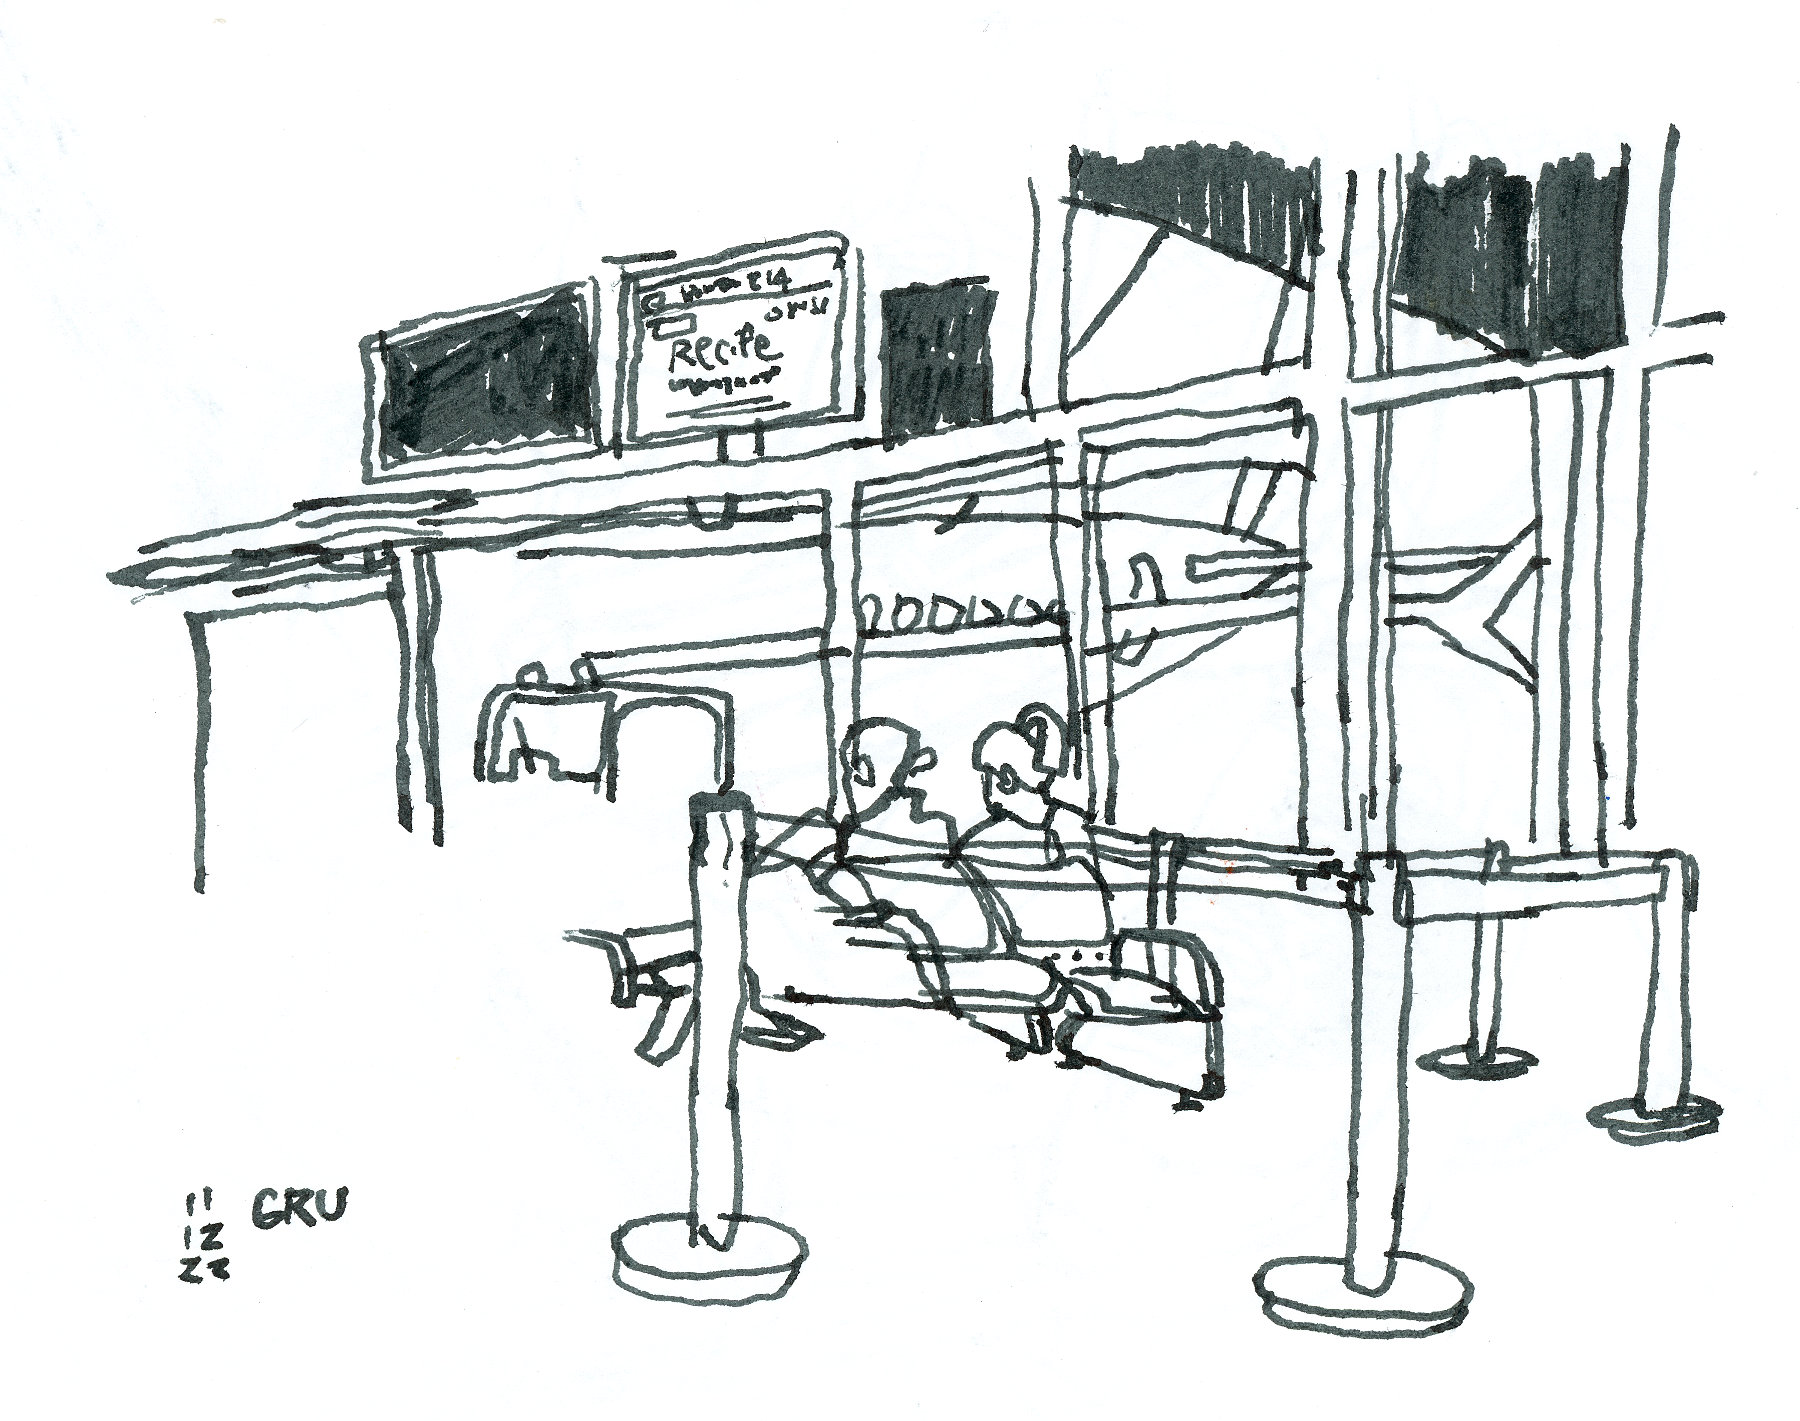 Desenho a traço de pessoas na sala de embarque de um aeroporto. Ao fundo, avista-se um avião pousado